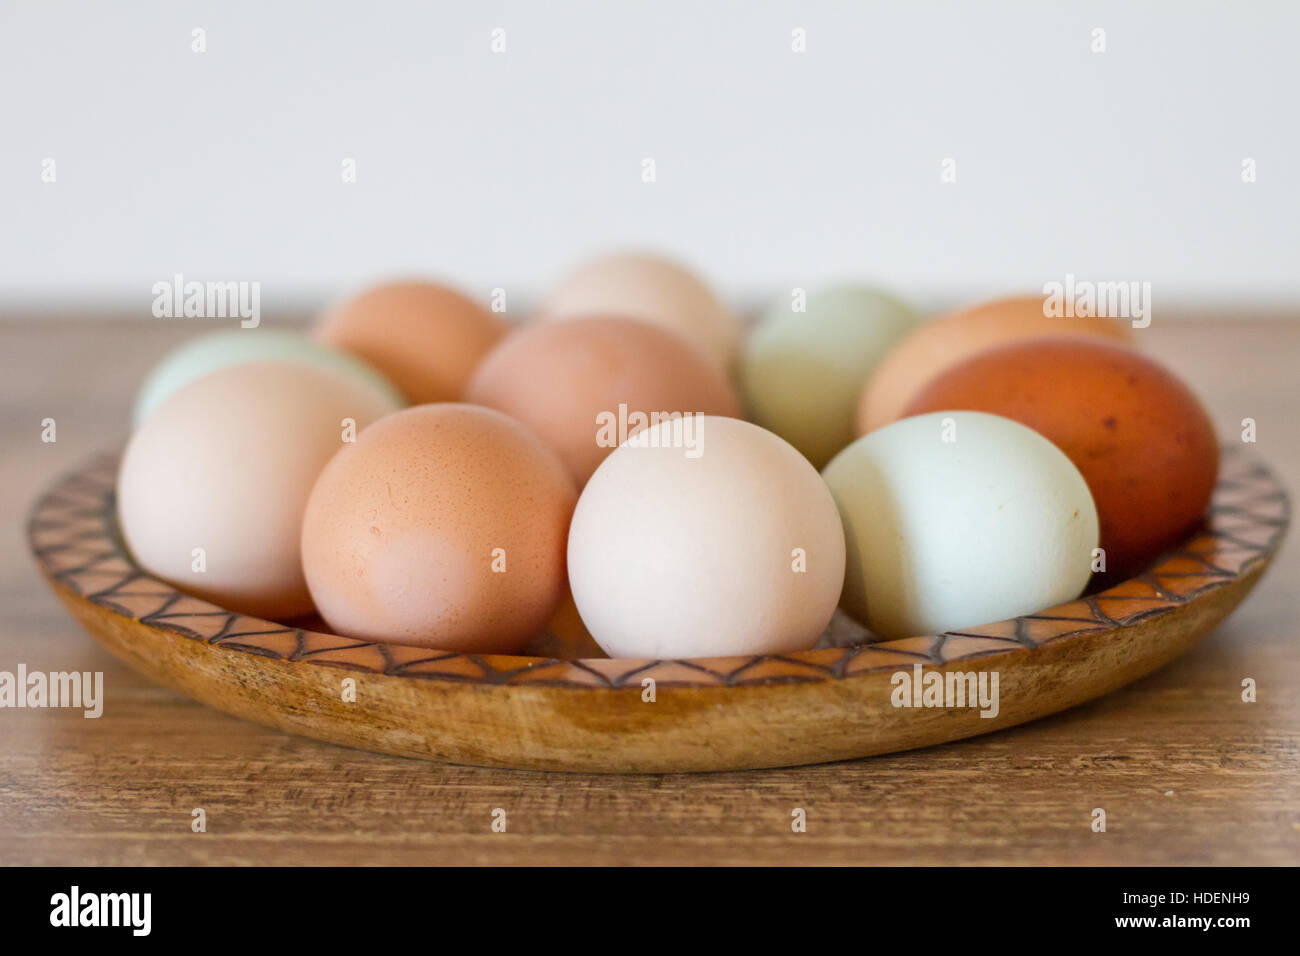 Free Range huevos de gallina Foto de stock